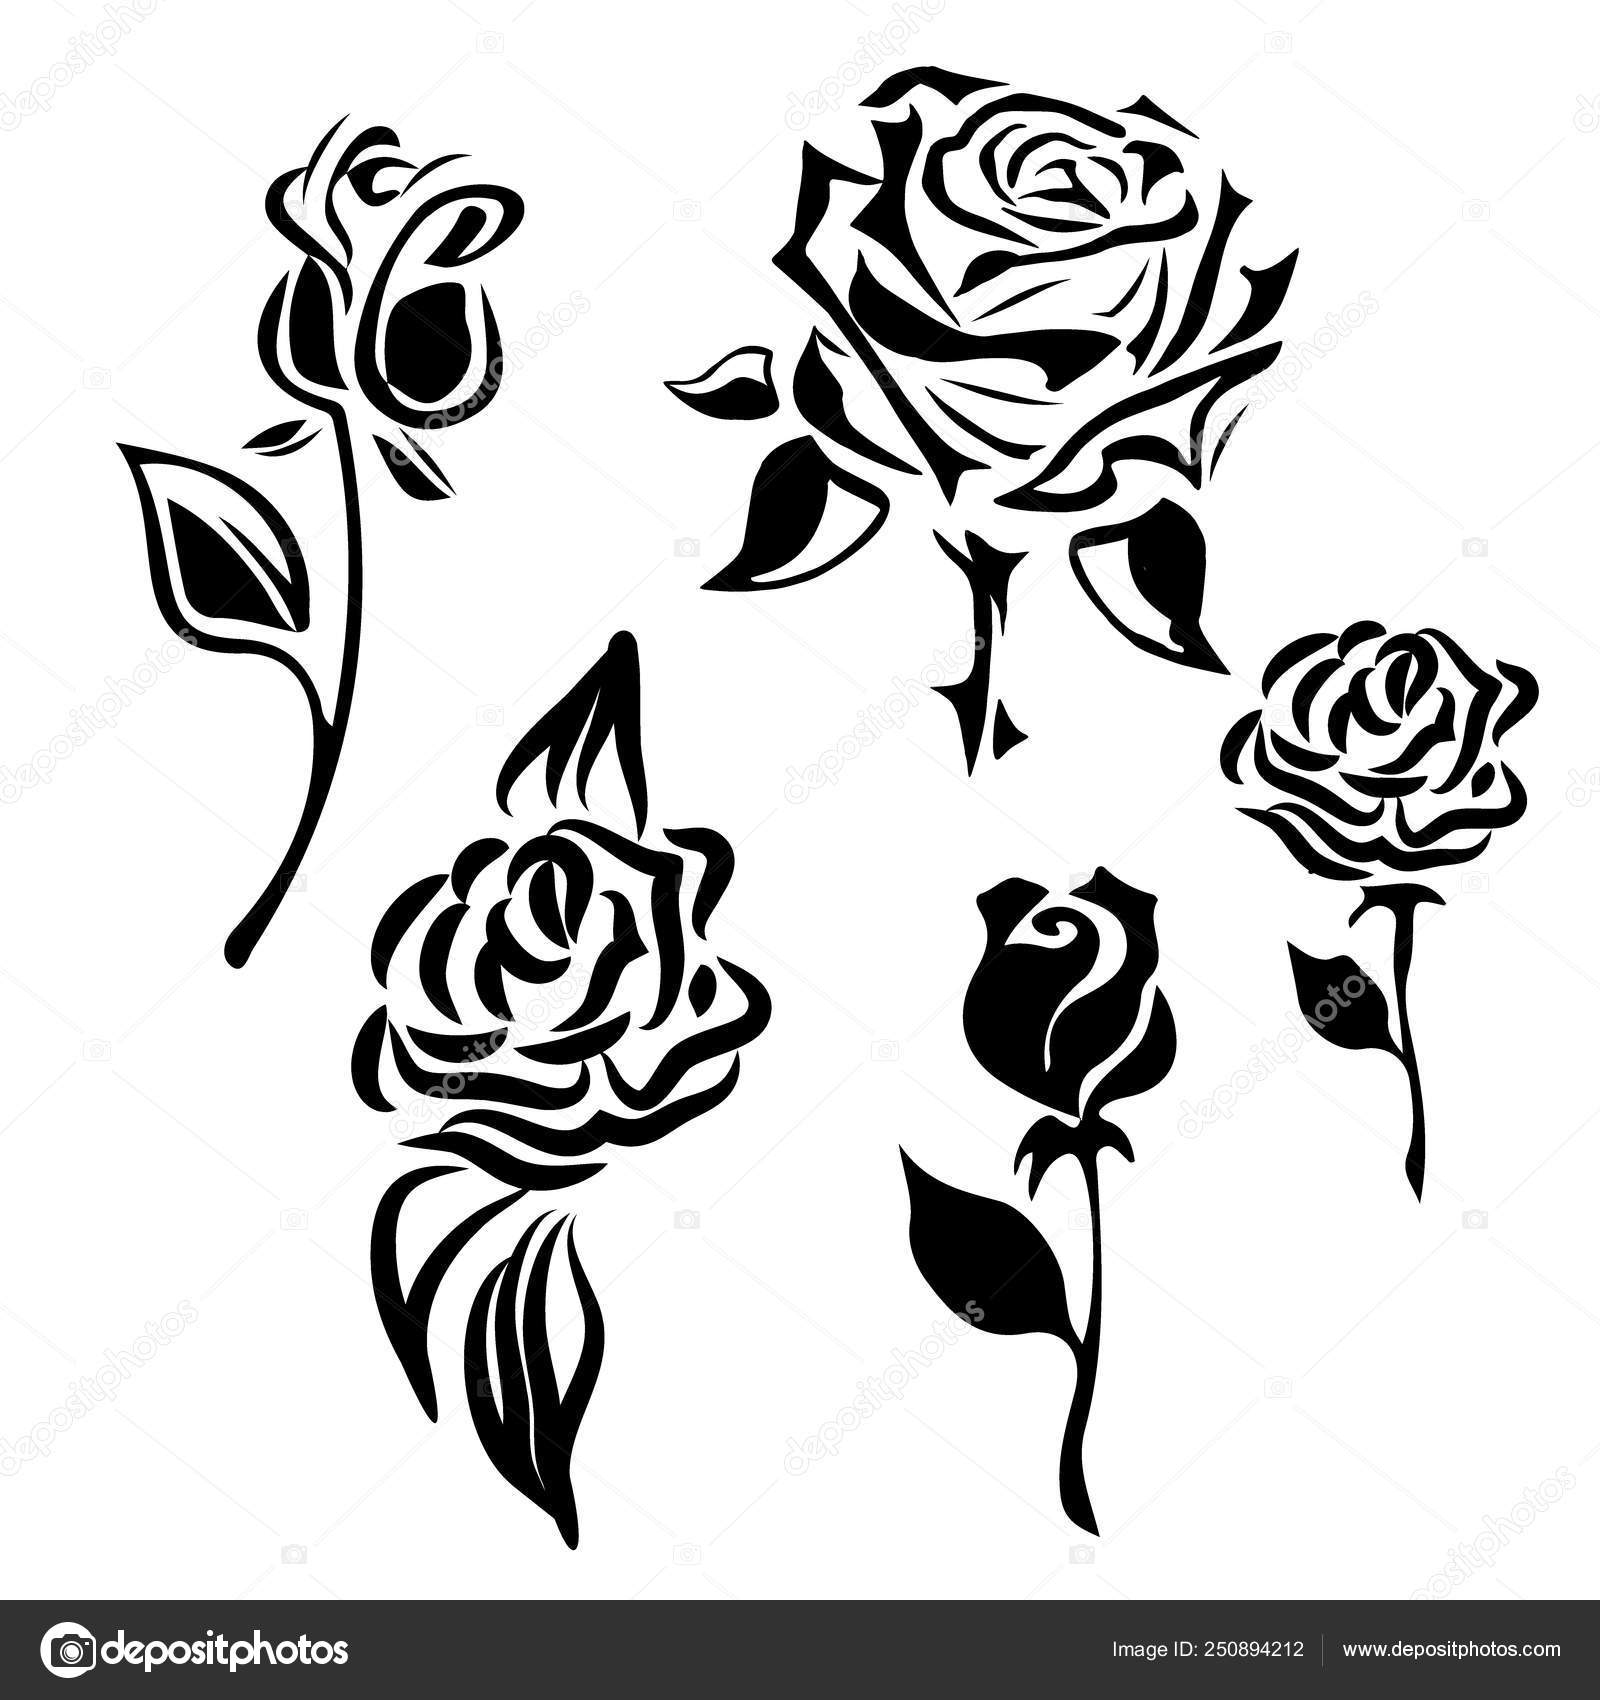 Icono de flor. Conjunto de siluetas decorativas de rosas. Vector rosa